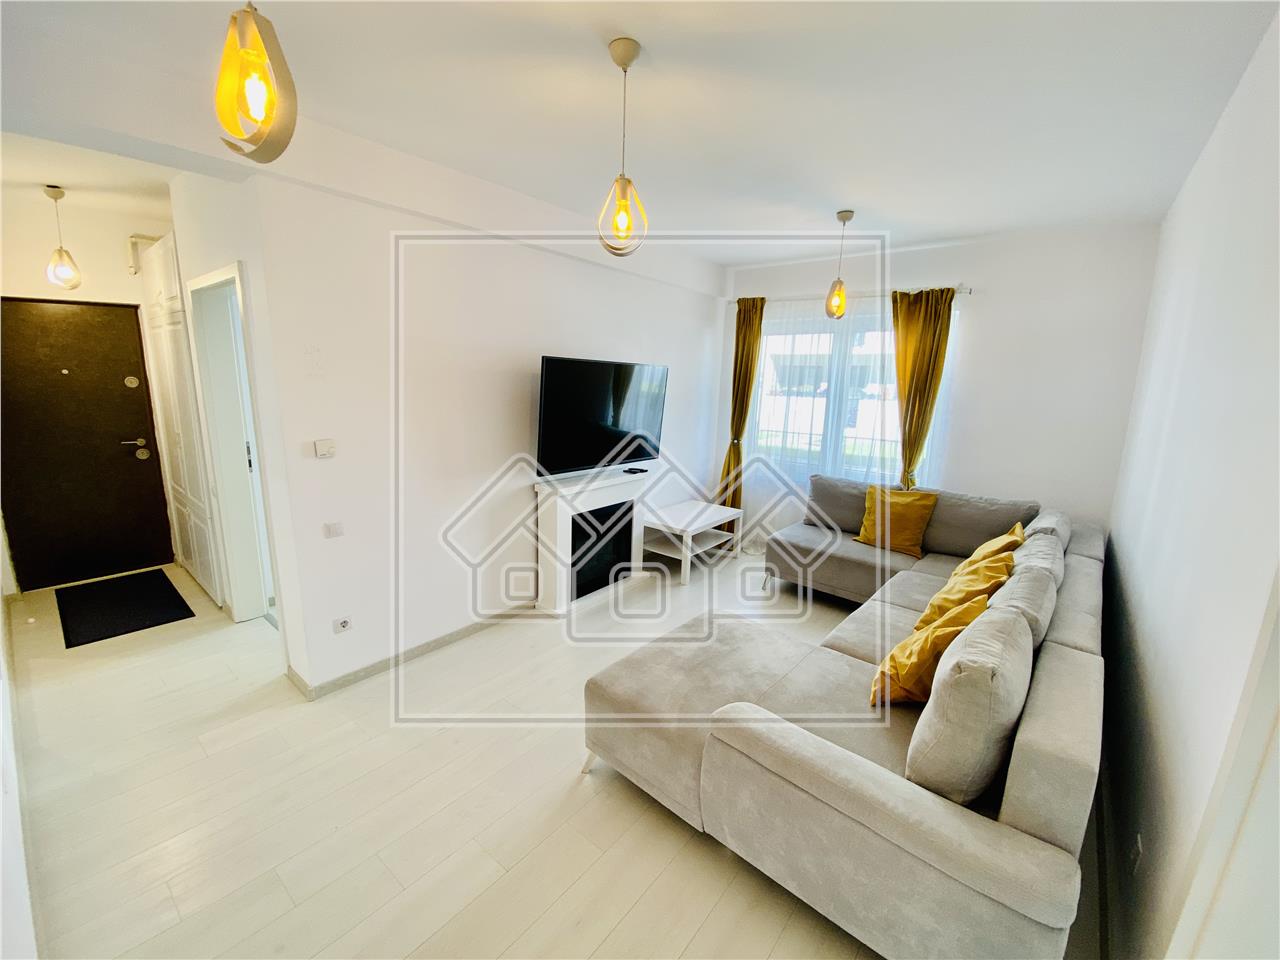 Apartament de vanzare in Sibiu - 3 camere,balcon si gradina - Turnisor